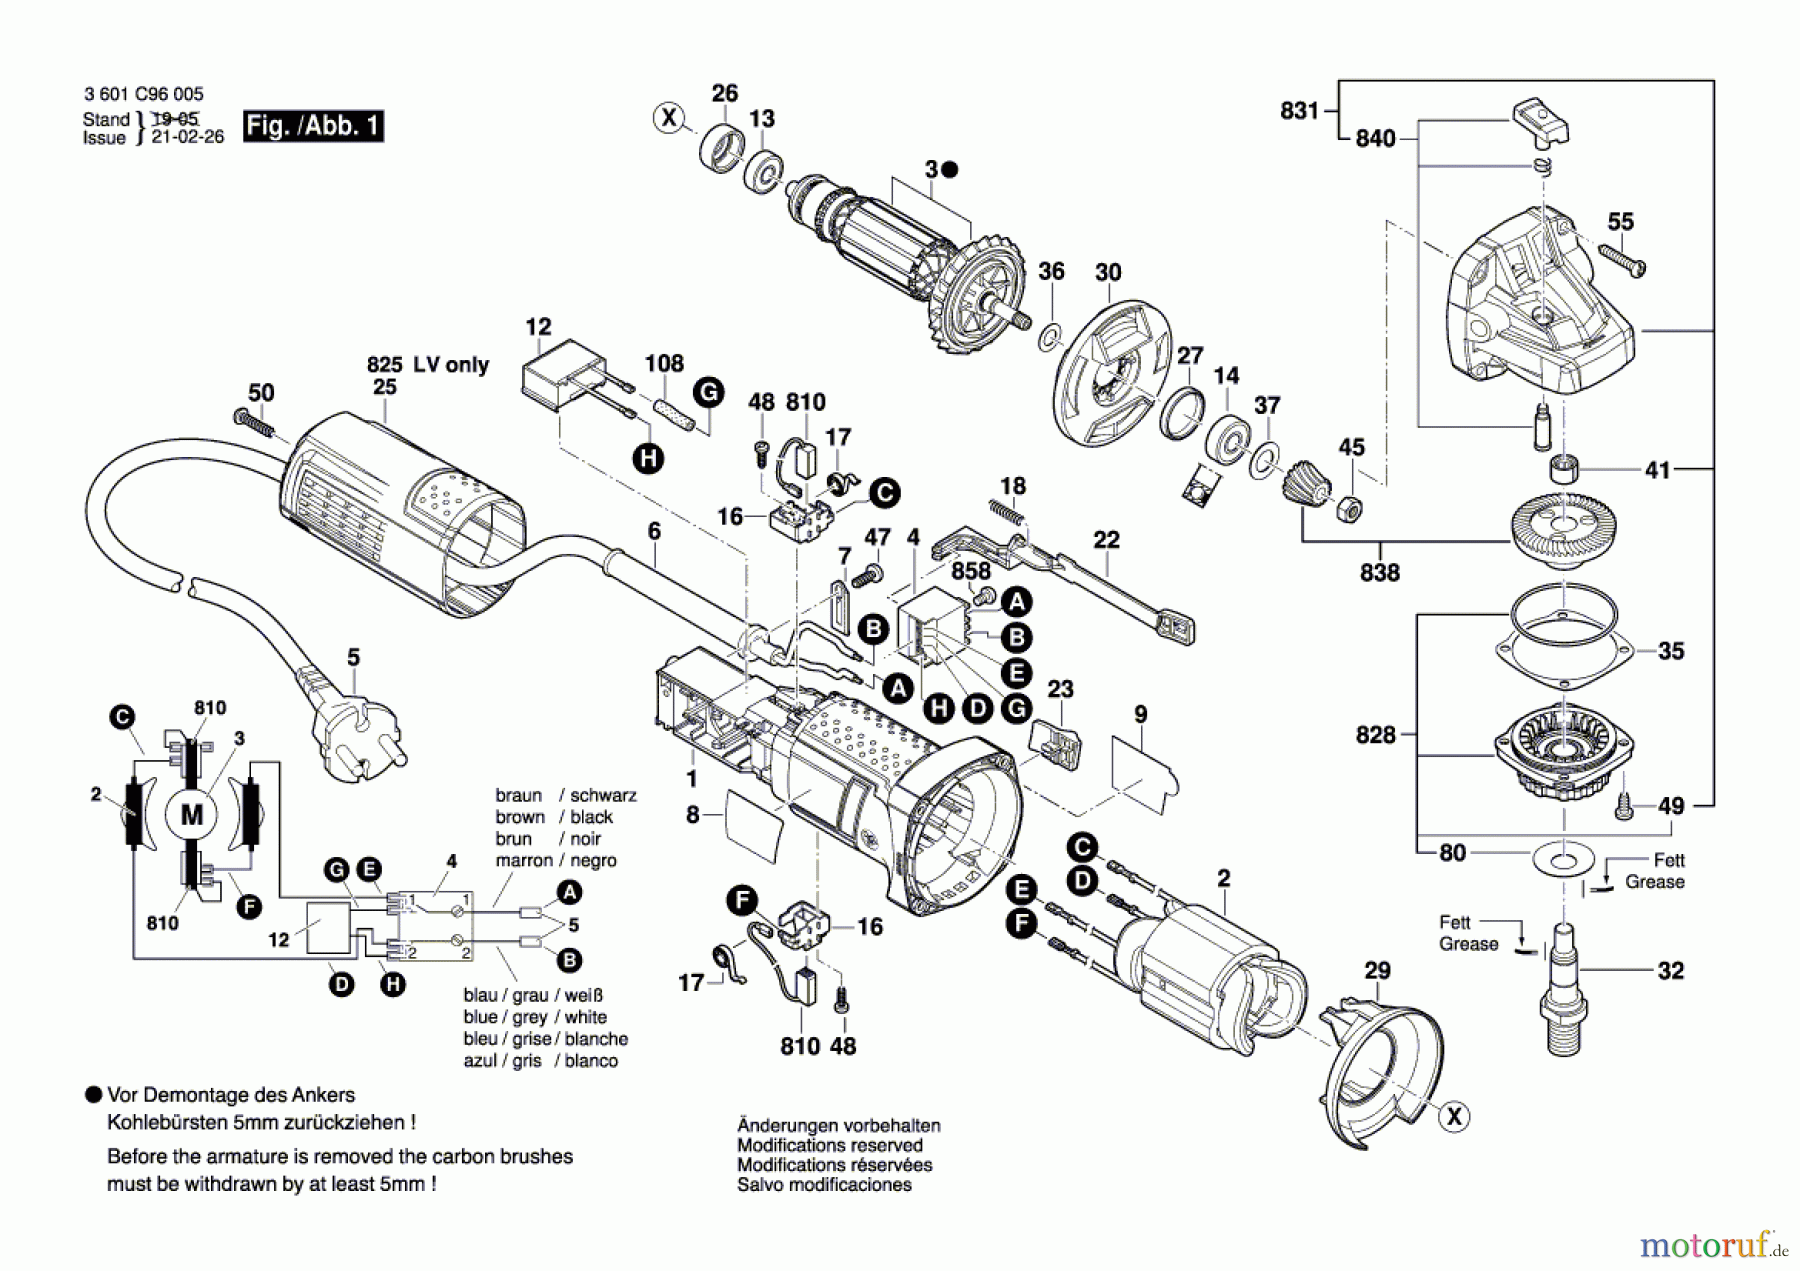  Bosch Werkzeug Winkelschleifer GWS 900 Seite 1